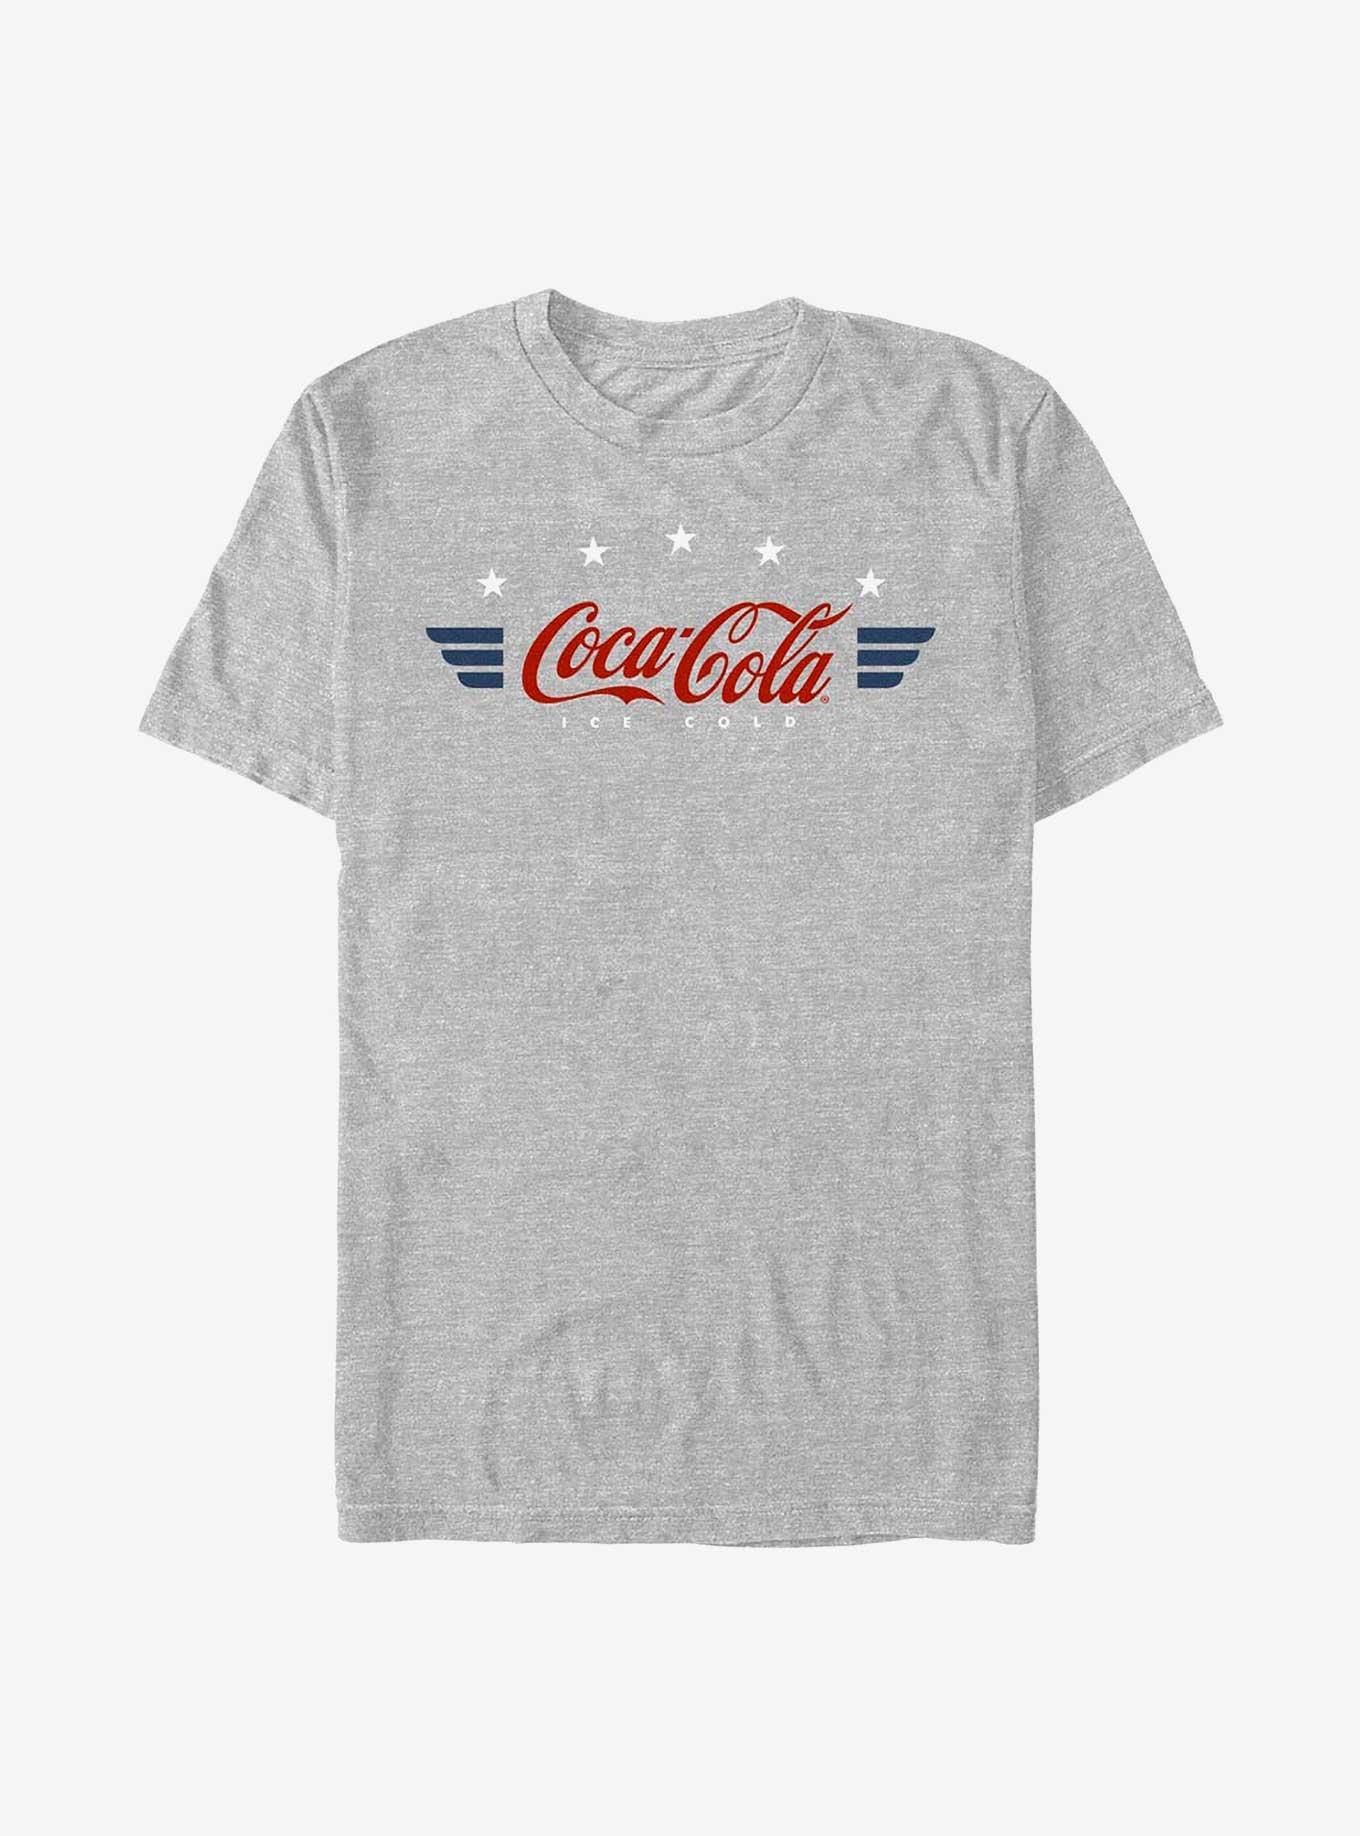 Coca-Cola Retro Americana Wings Coca Cola Badge T-Shirt, ATH HTR, hi-res